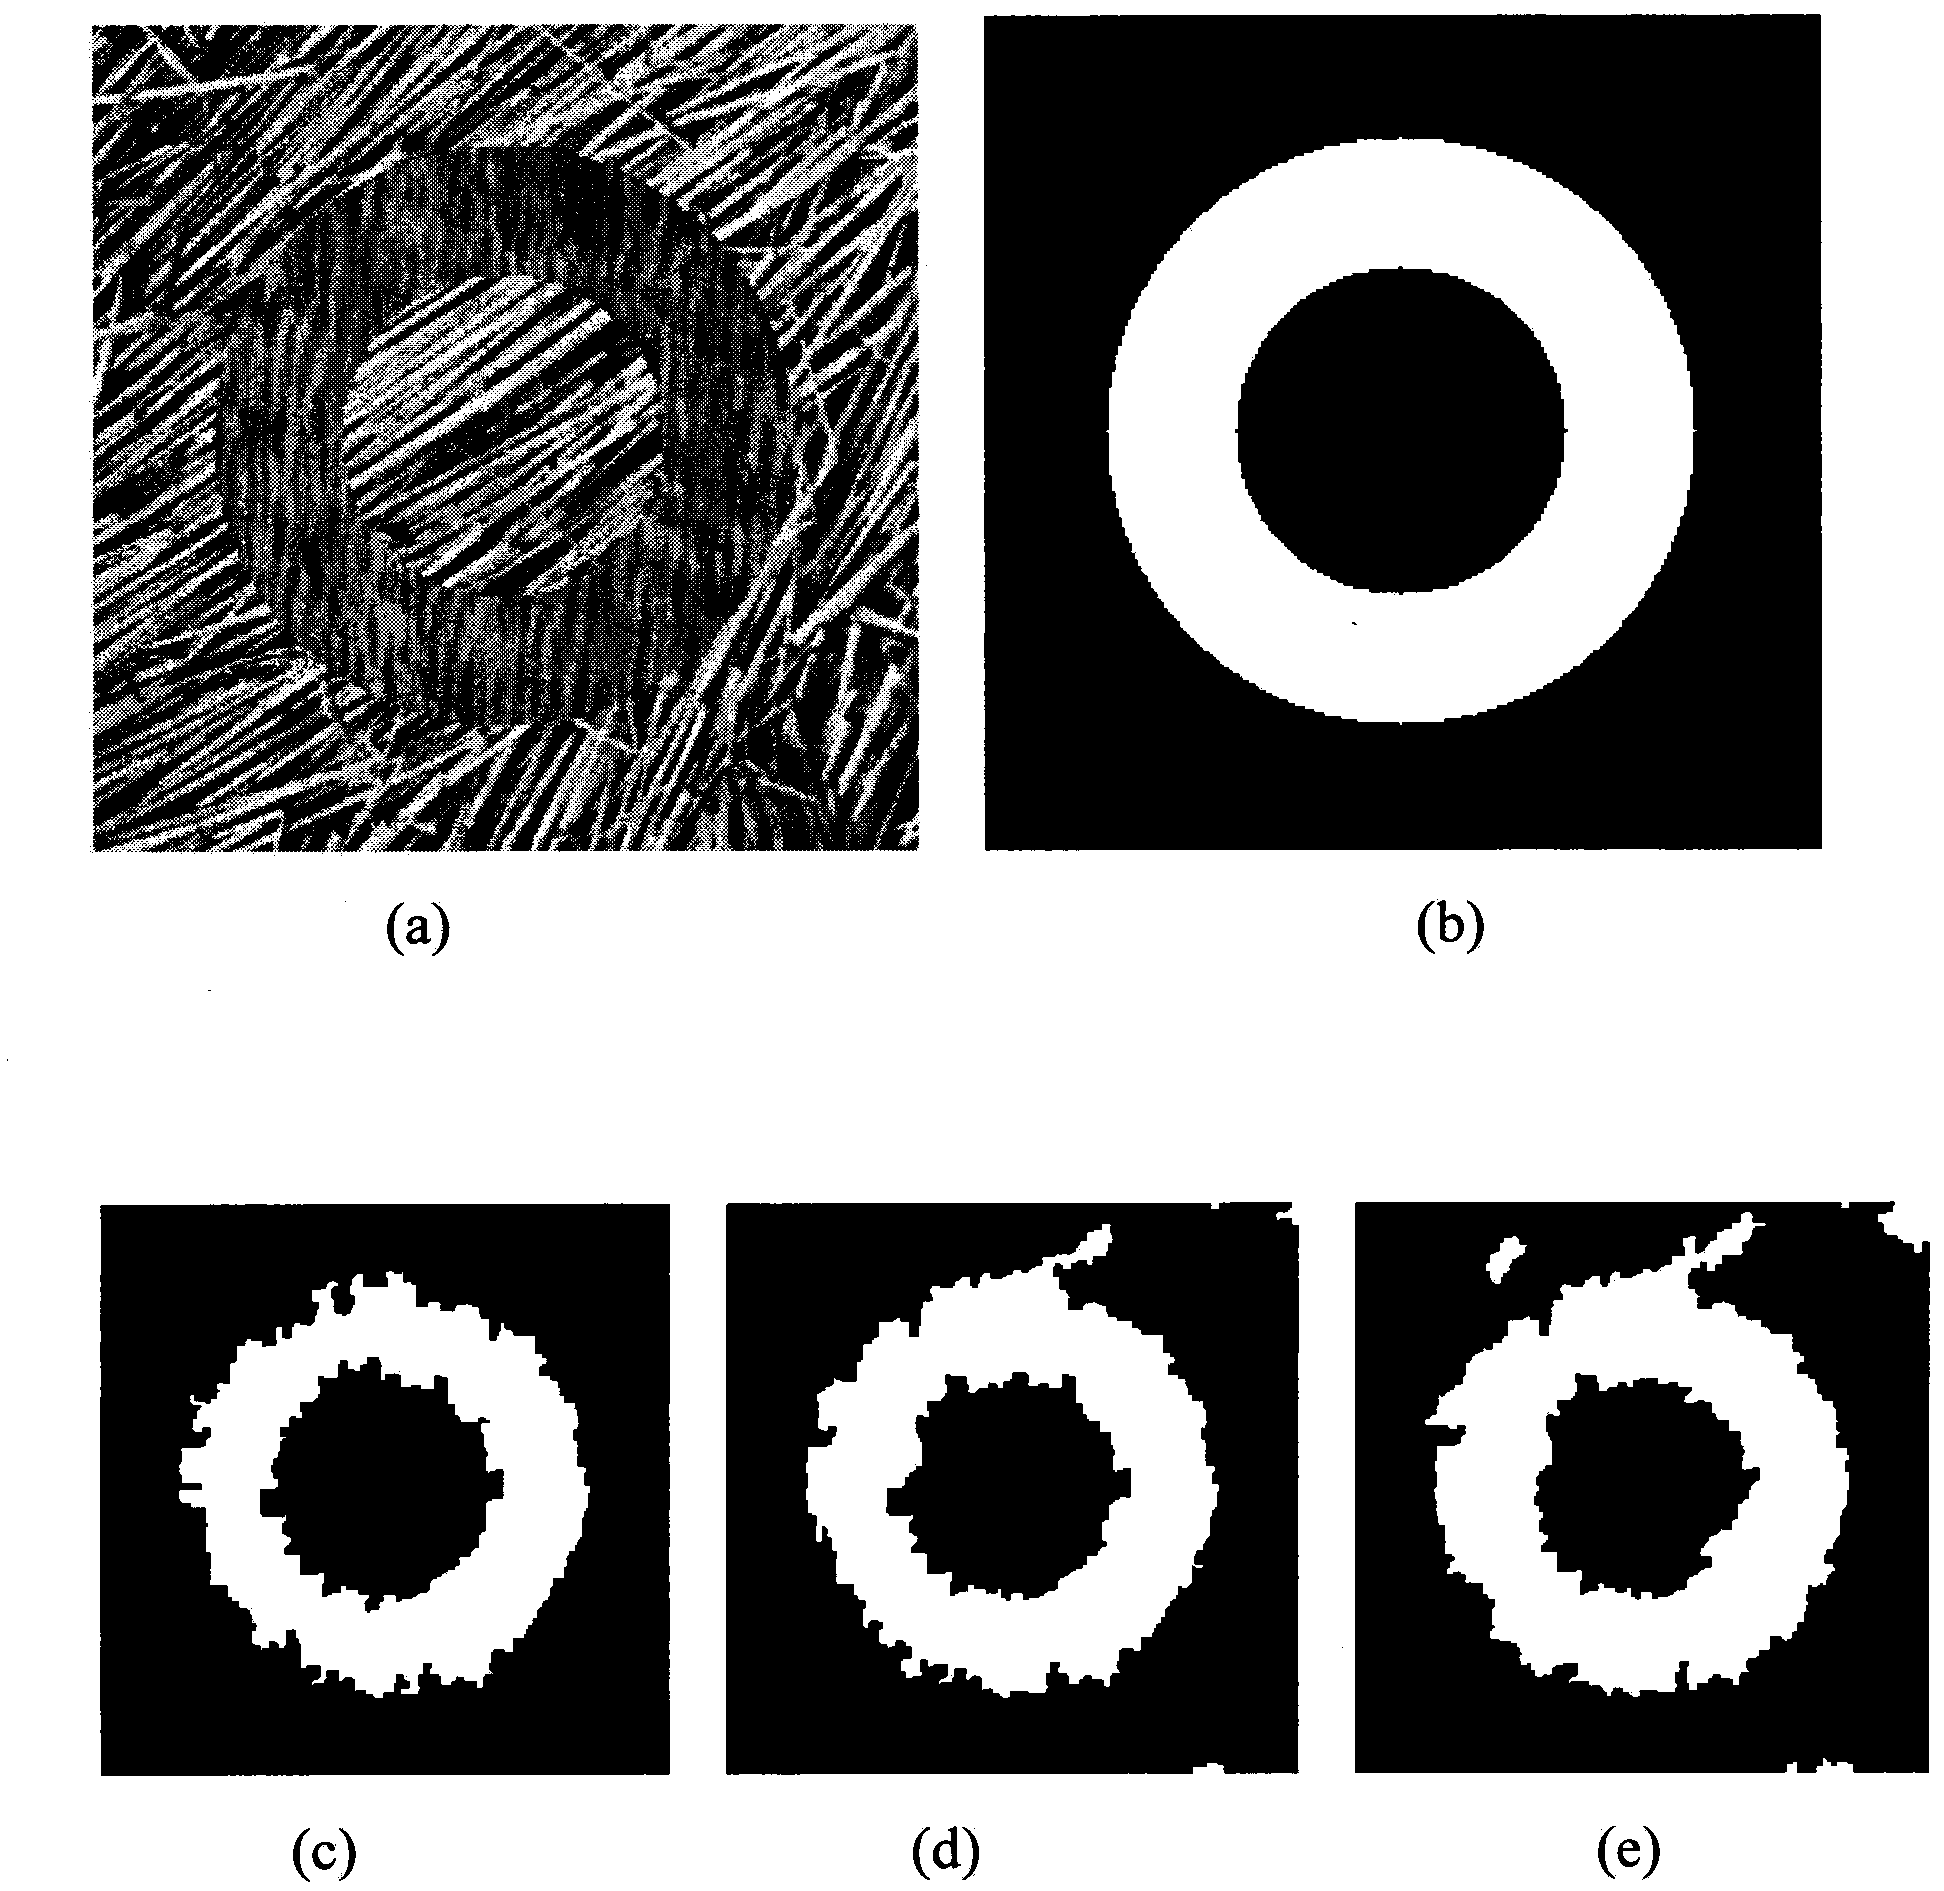 Image segmentation method based on similarity interaction mechanism